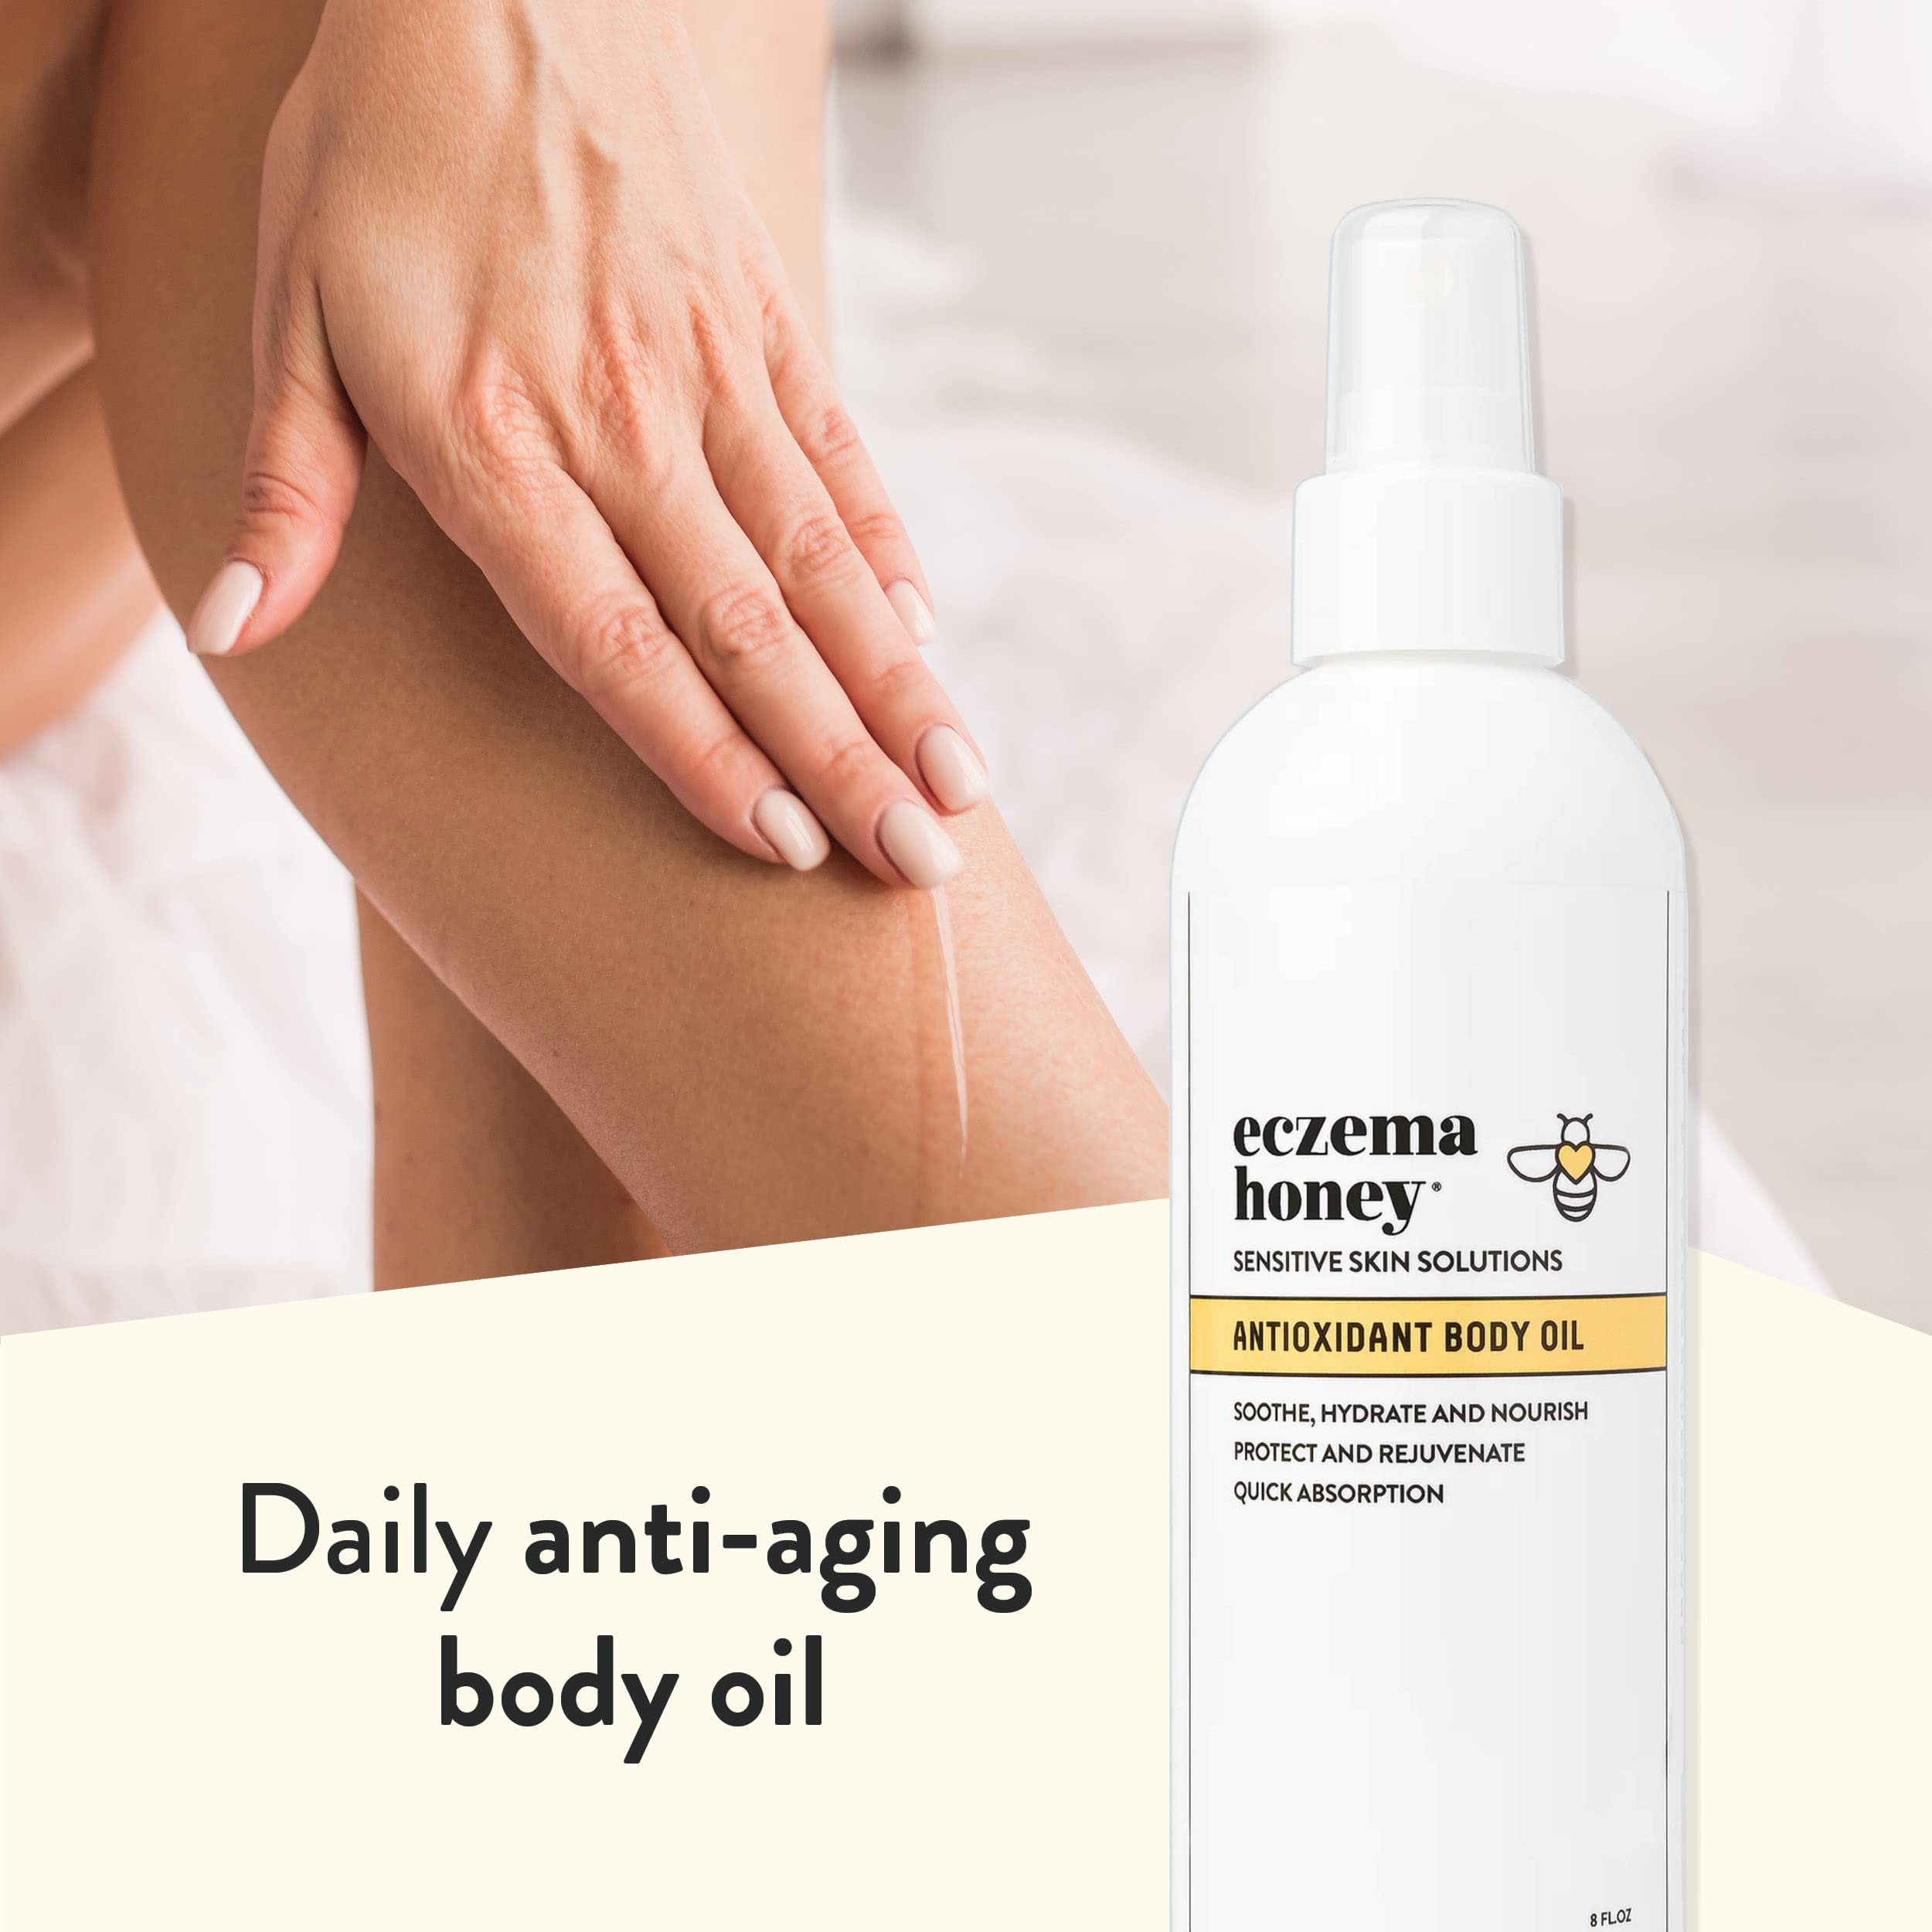 ECZEMA HONEY Antioxidant Body Oil - After Shower All Over Body Oil Spray for Skin - Eczema-Prone & Sensitive Moisturizing Skin Oil - Body Oils for Women, Men & Kids (8 Fl Oz)